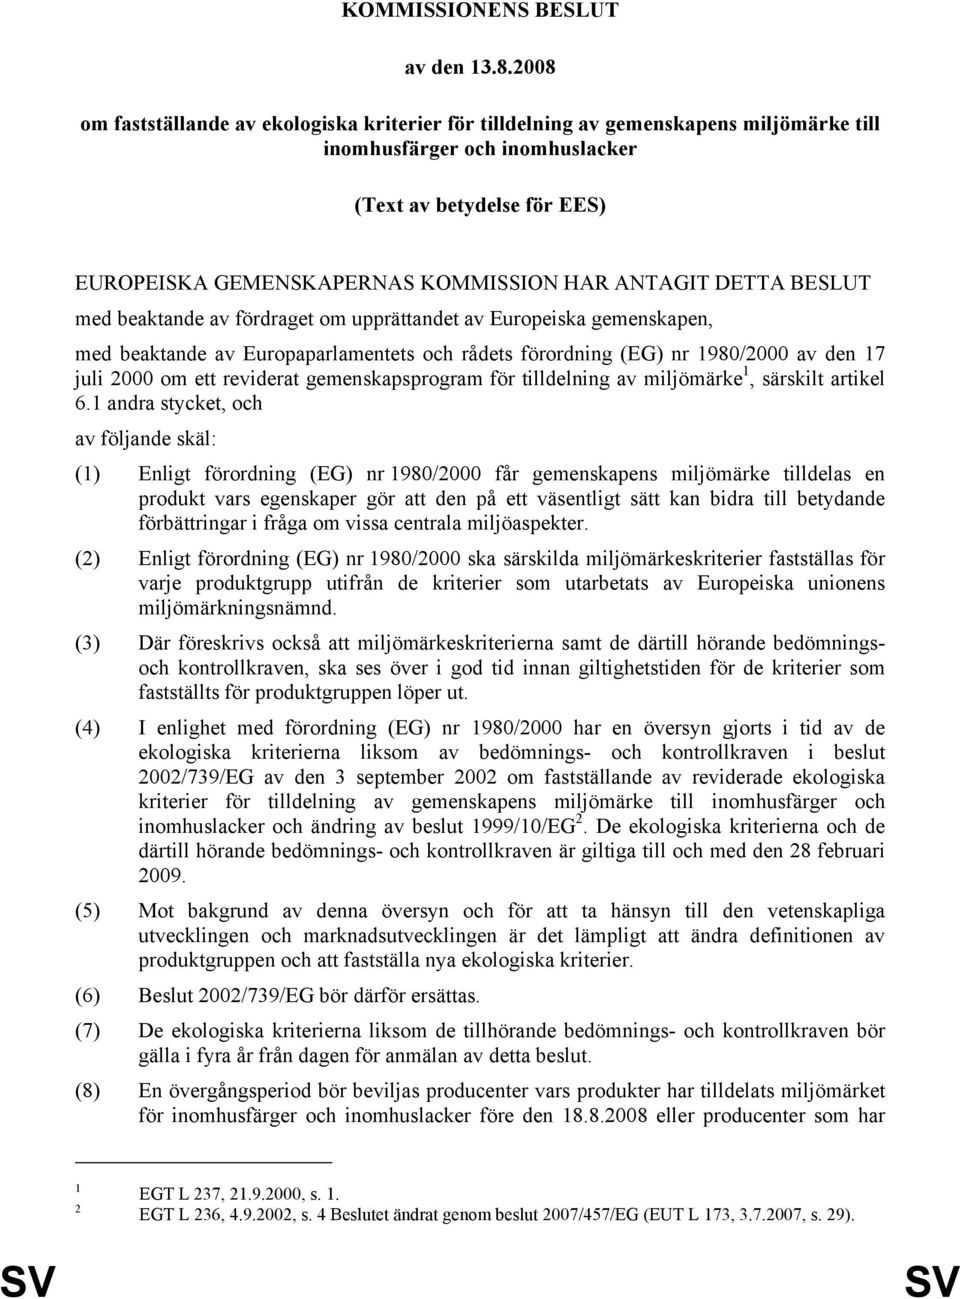 ANTAGIT DETTA BESLUT med beaktande av fördraget om upprättandet av Europeiska gemenskapen, med beaktande av Europaparlamentets och rådets förordning (EG) nr 1980/2000 av den 17 juli 2000 om ett